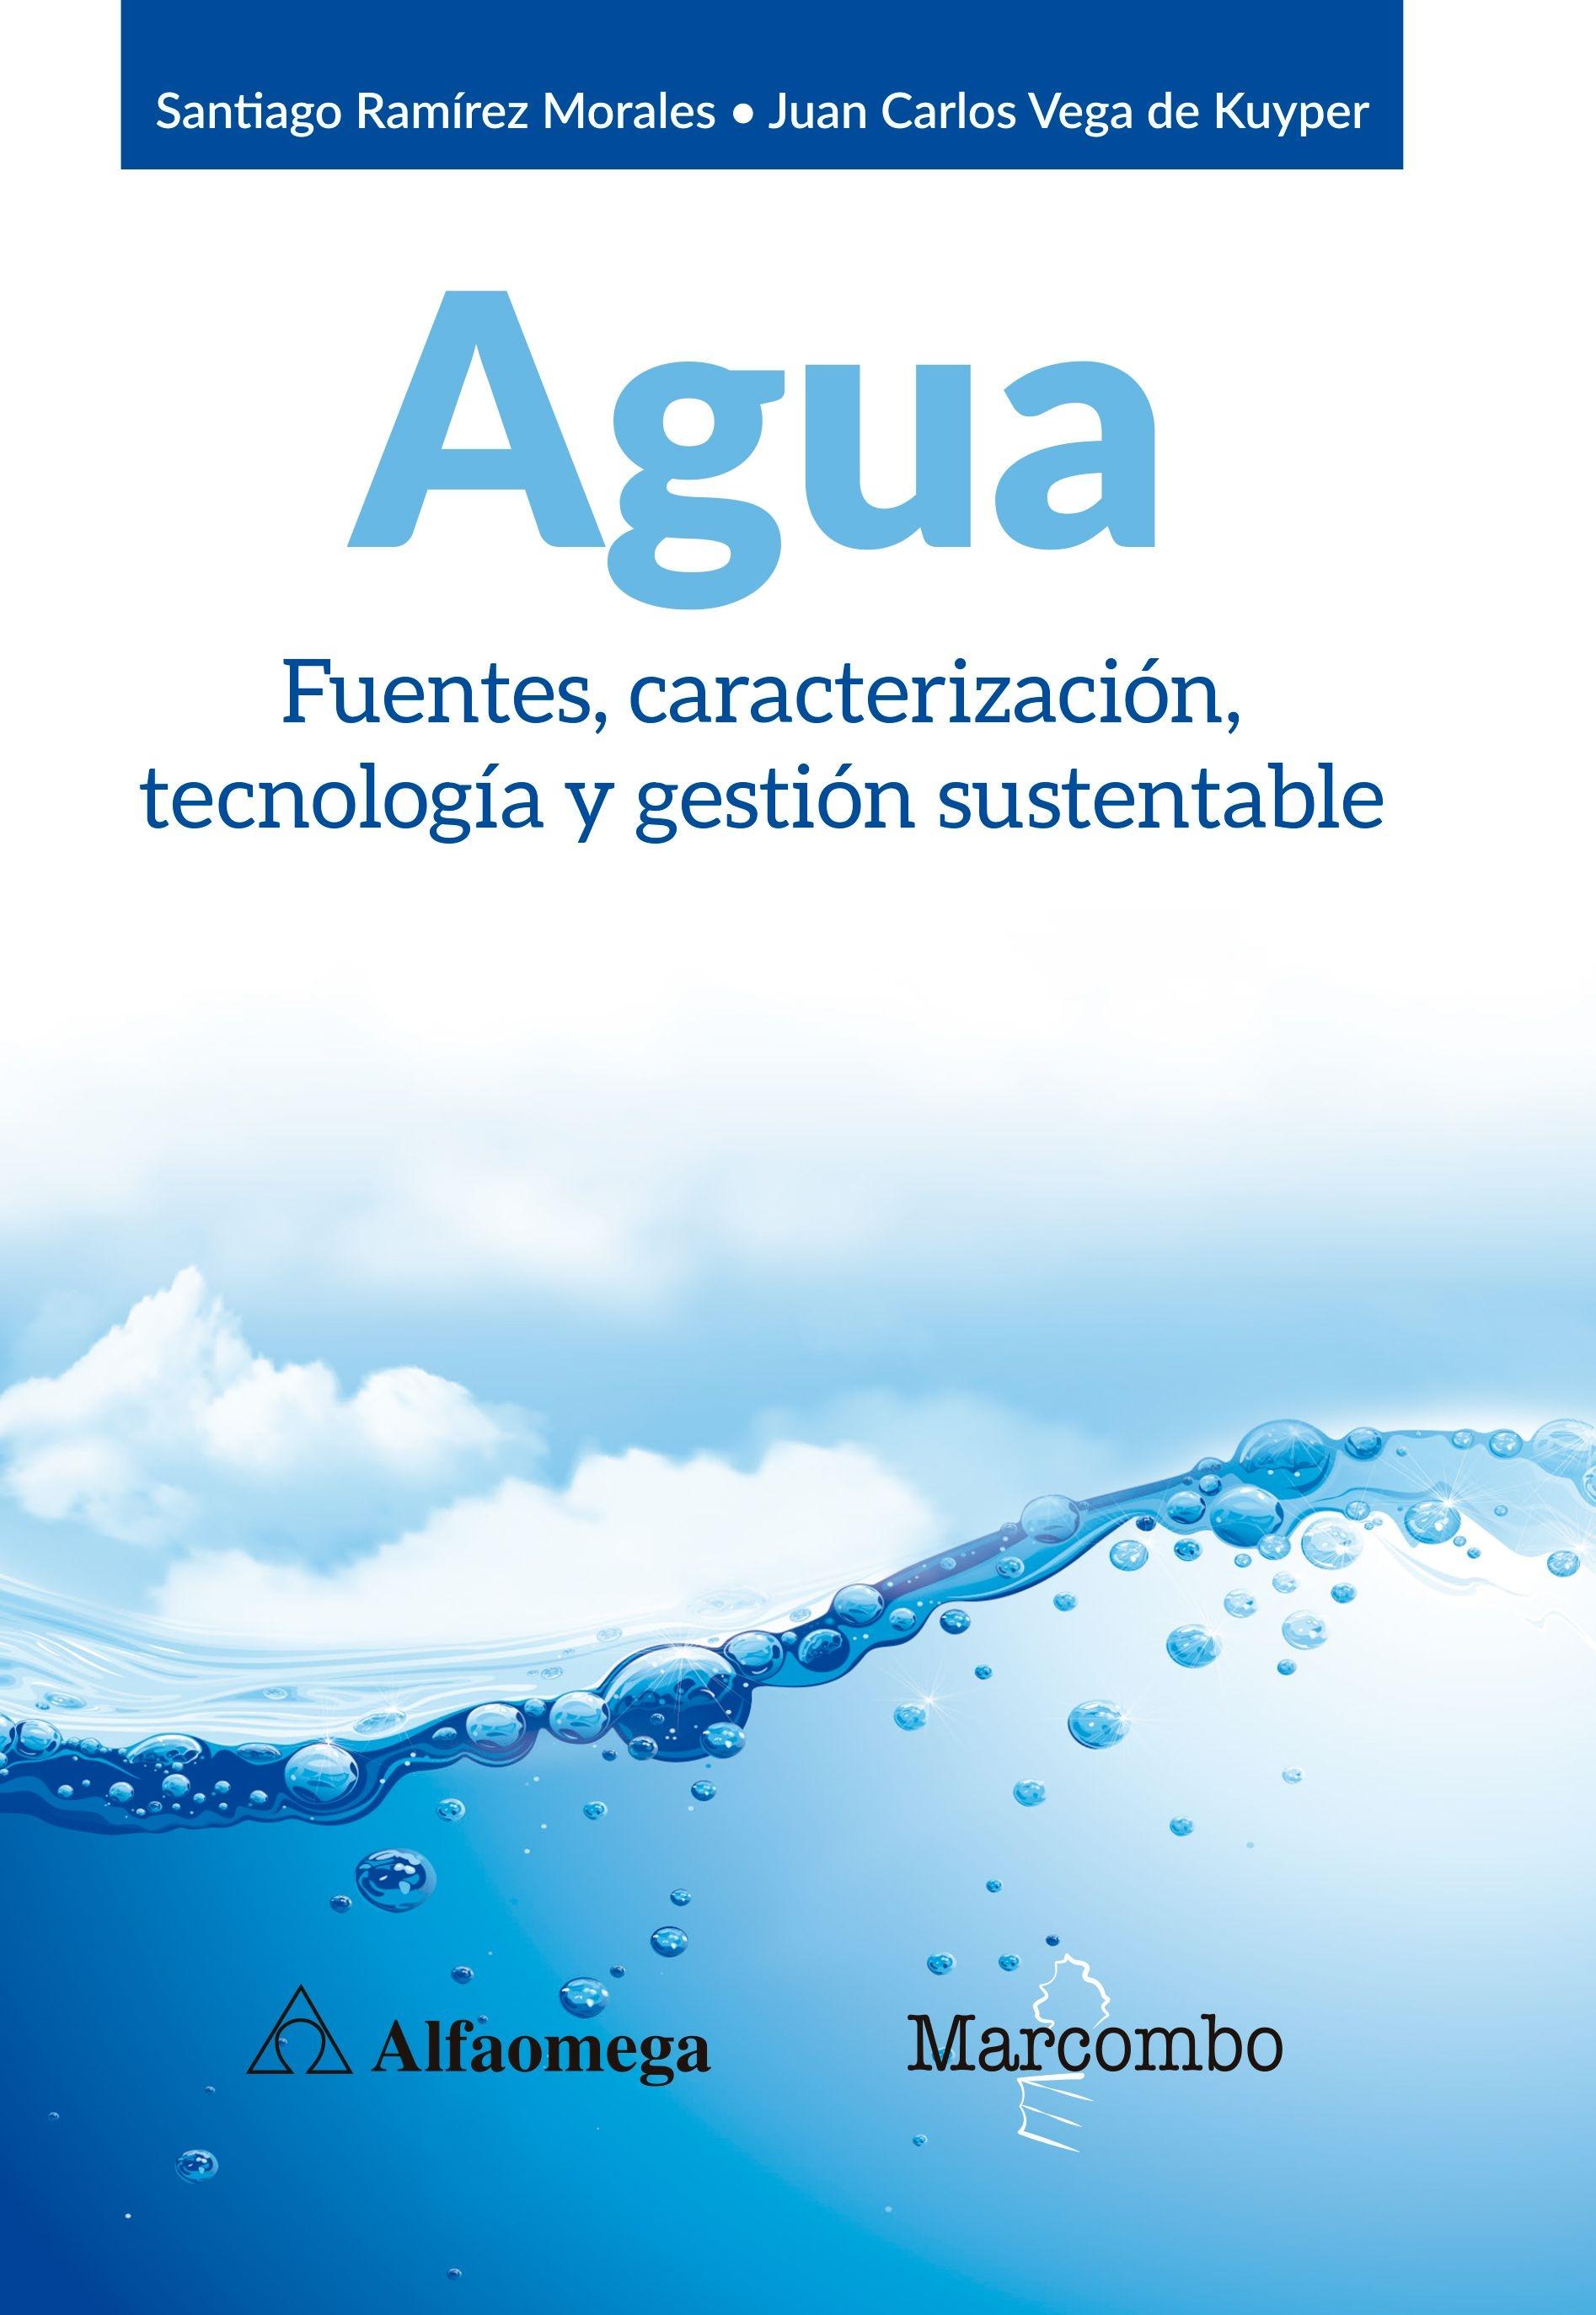 Agua "Fuentes, caracterización, tecnología y gestión sustentable"